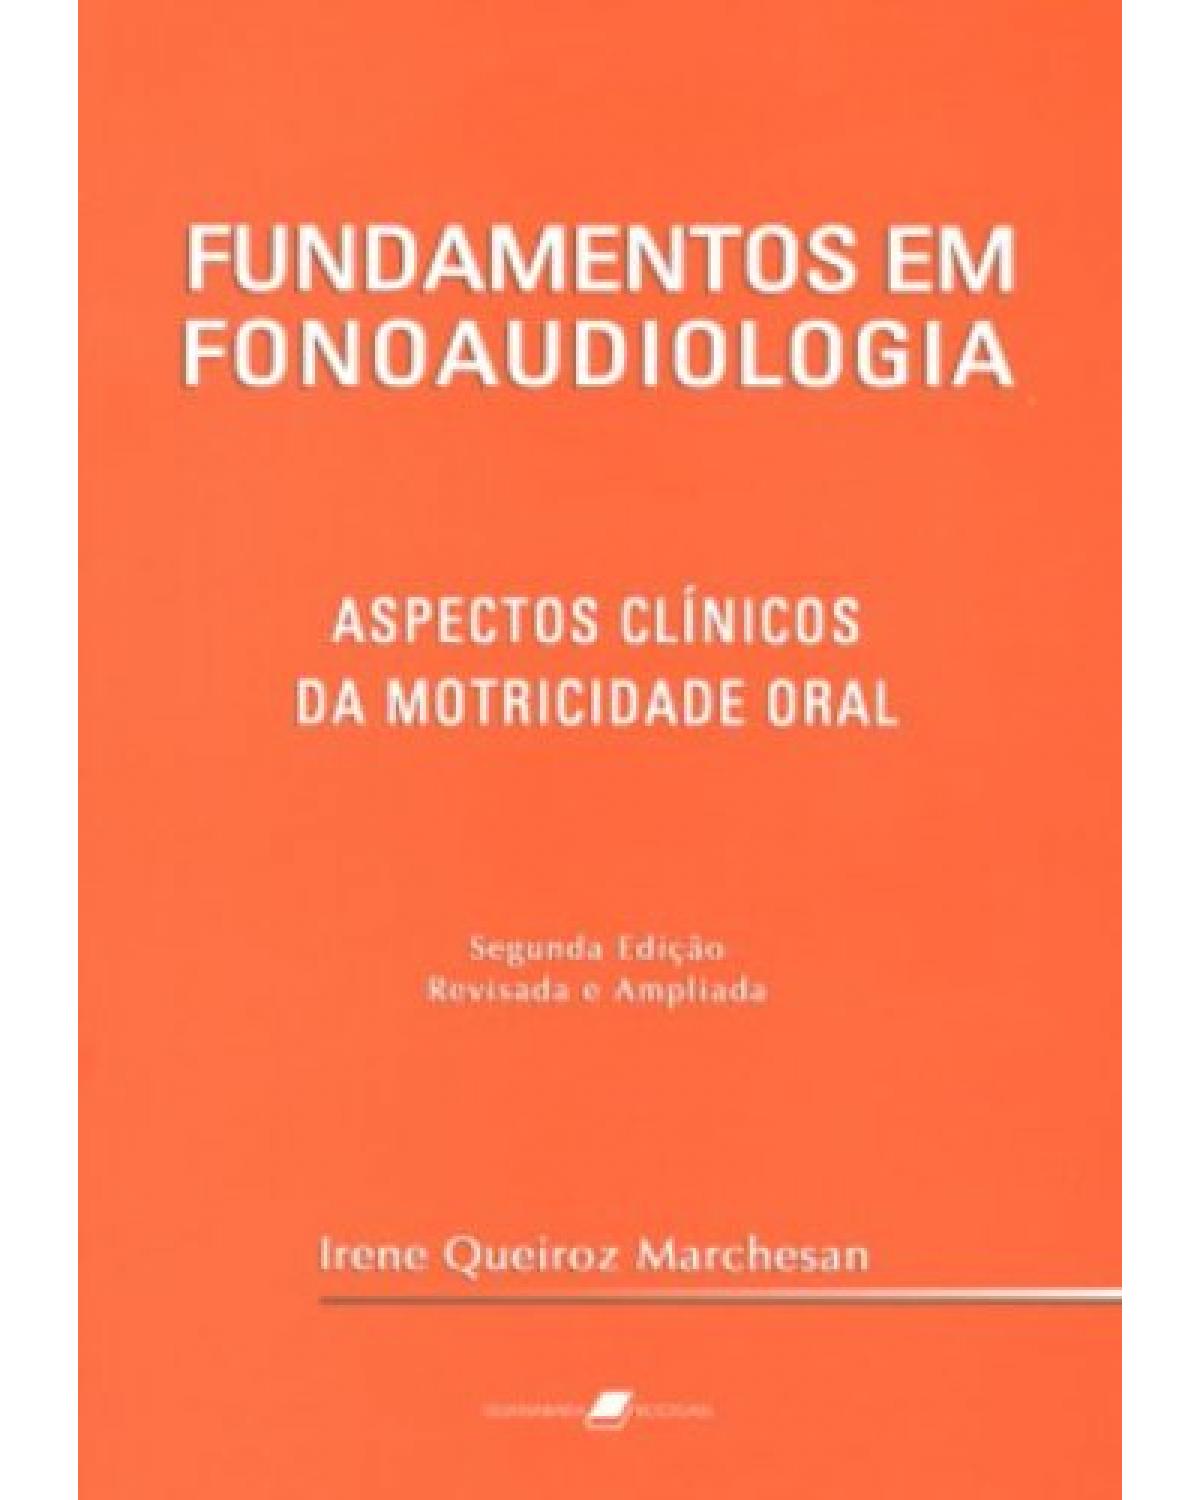 Fundamentos em fonoaudiologia - Aspectos clínicos da motricidade oral - 2ª Edição | 2005